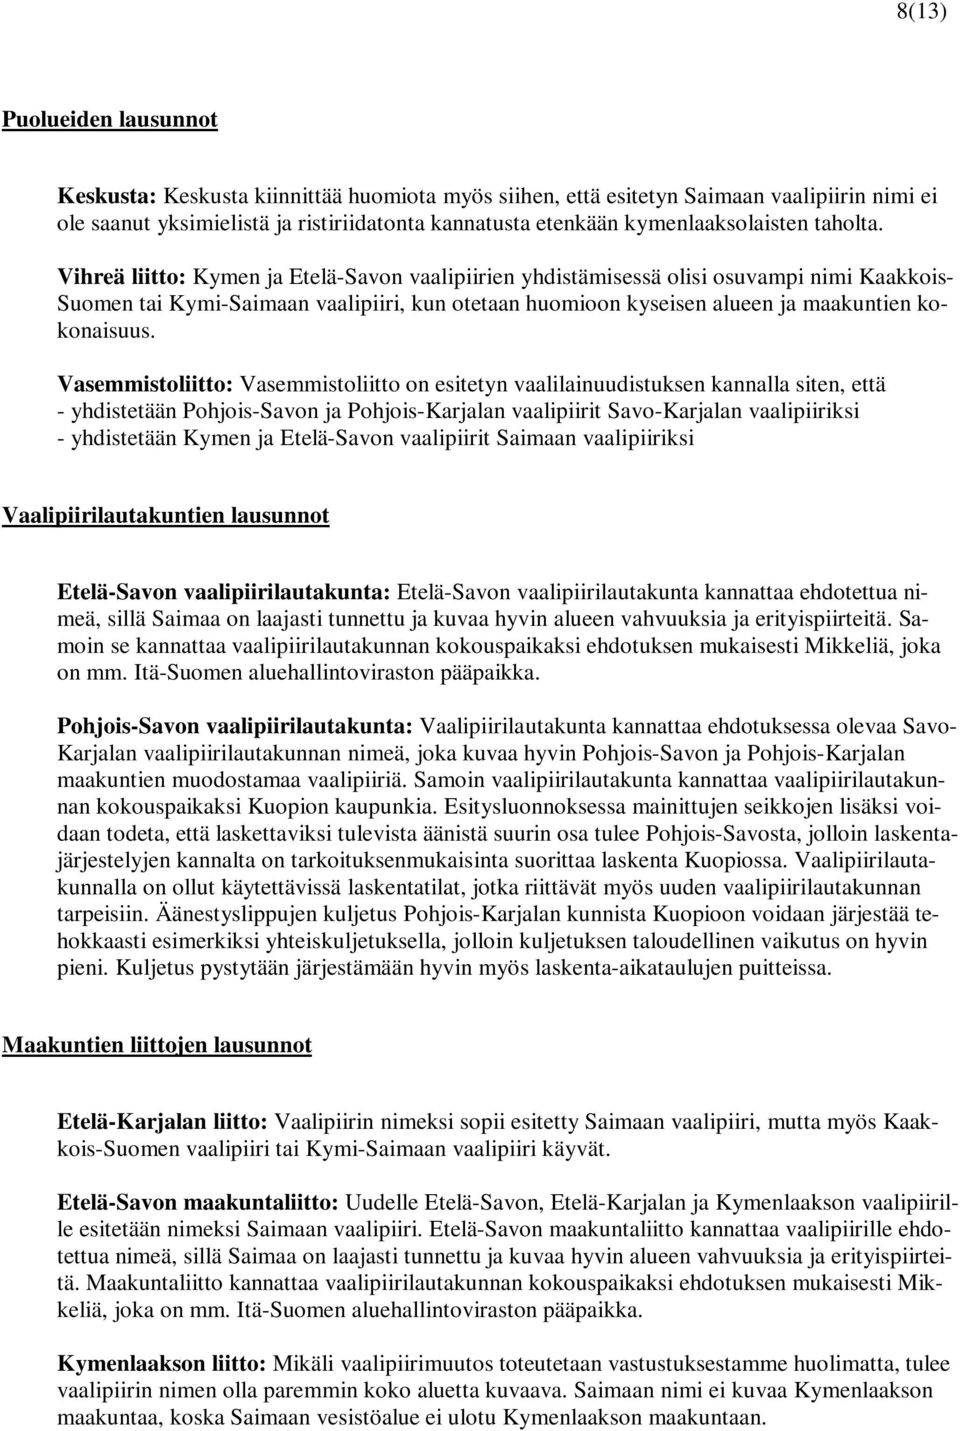 Vihreä liitto: Kymen ja Etelä-Savon vaalipiirien yhdistämisessä olisi osuvampi nimi Kaakkois- Suomen tai Kymi-Saimaan vaalipiiri, kun otetaan huomioon kyseisen alueen ja maakuntien kokonaisuus.